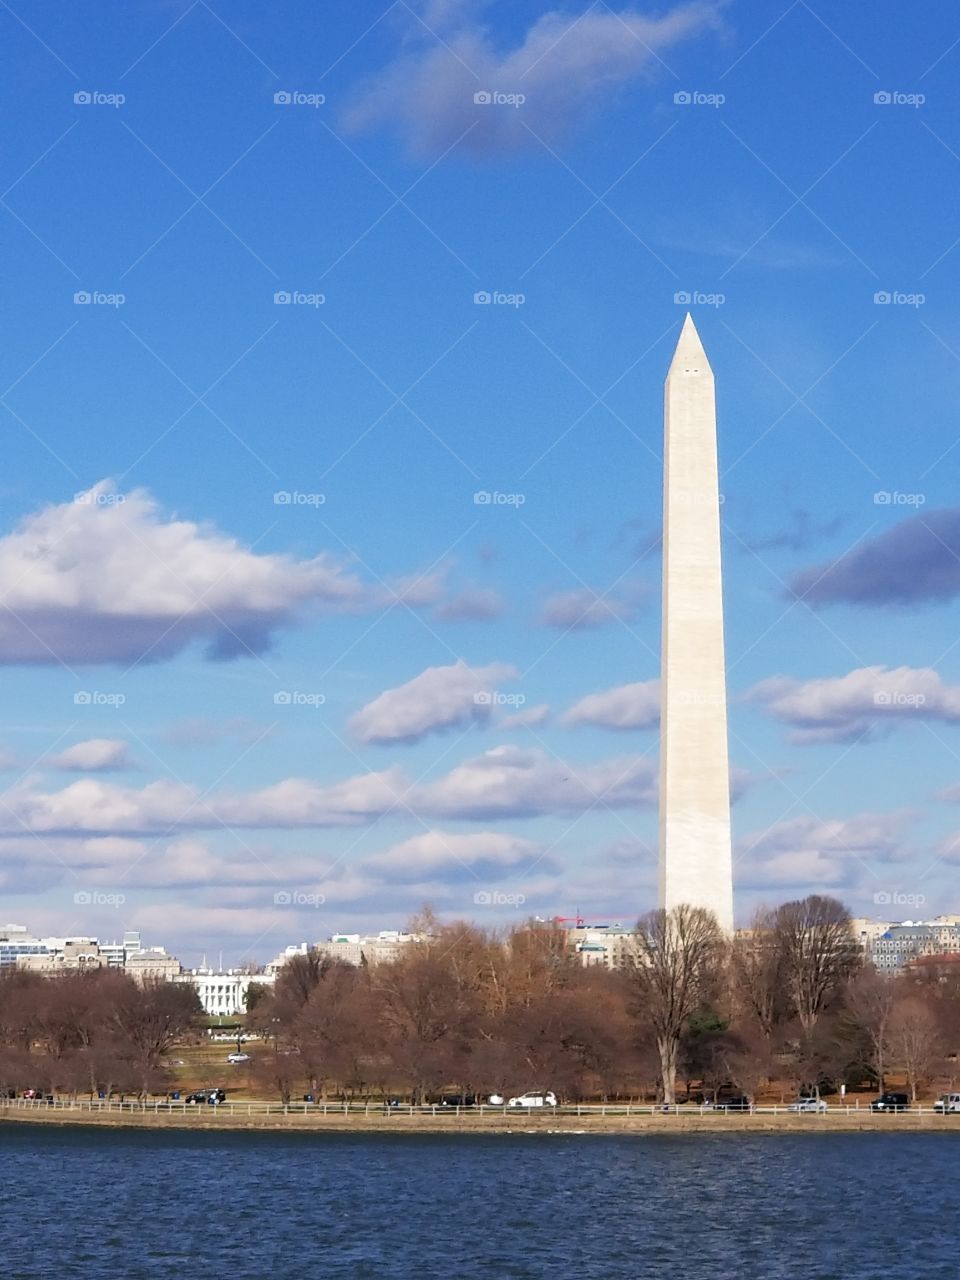 Washington monument and white house